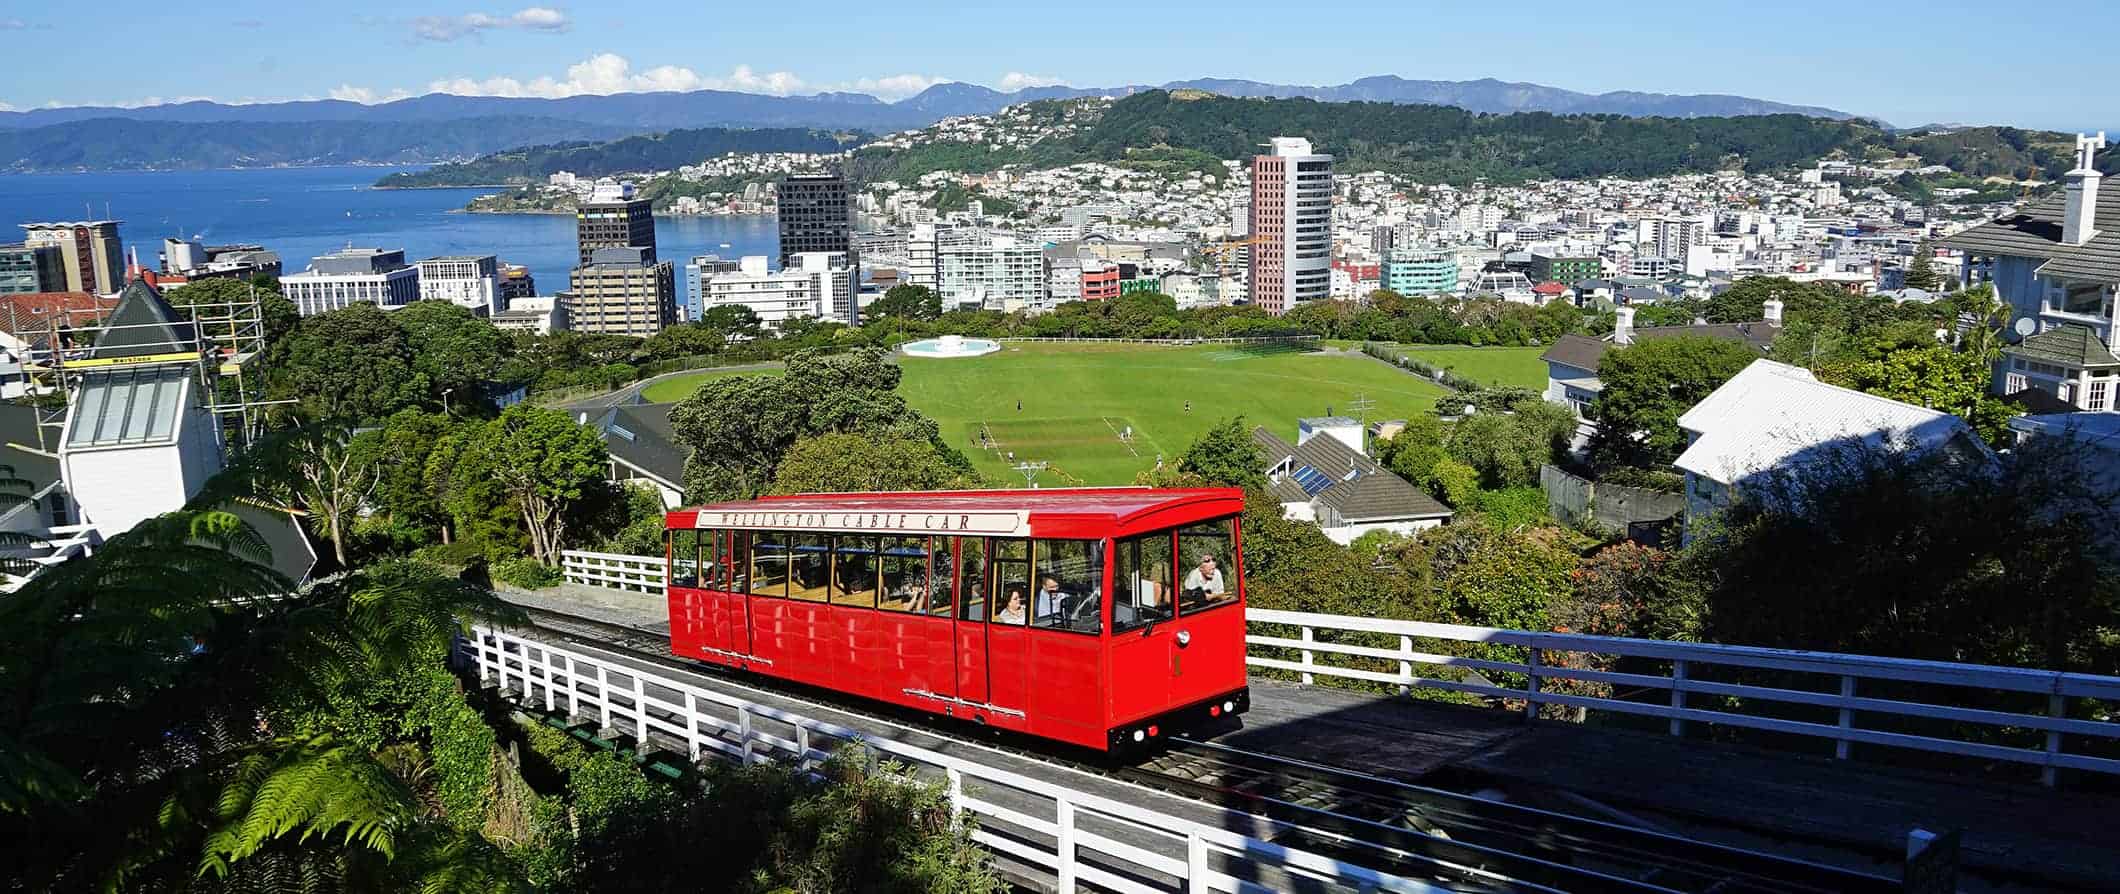 O teleférico Wellington Red sobe a encosta com a cidade de Wellington, na Nova Zelândia, ao fundo.